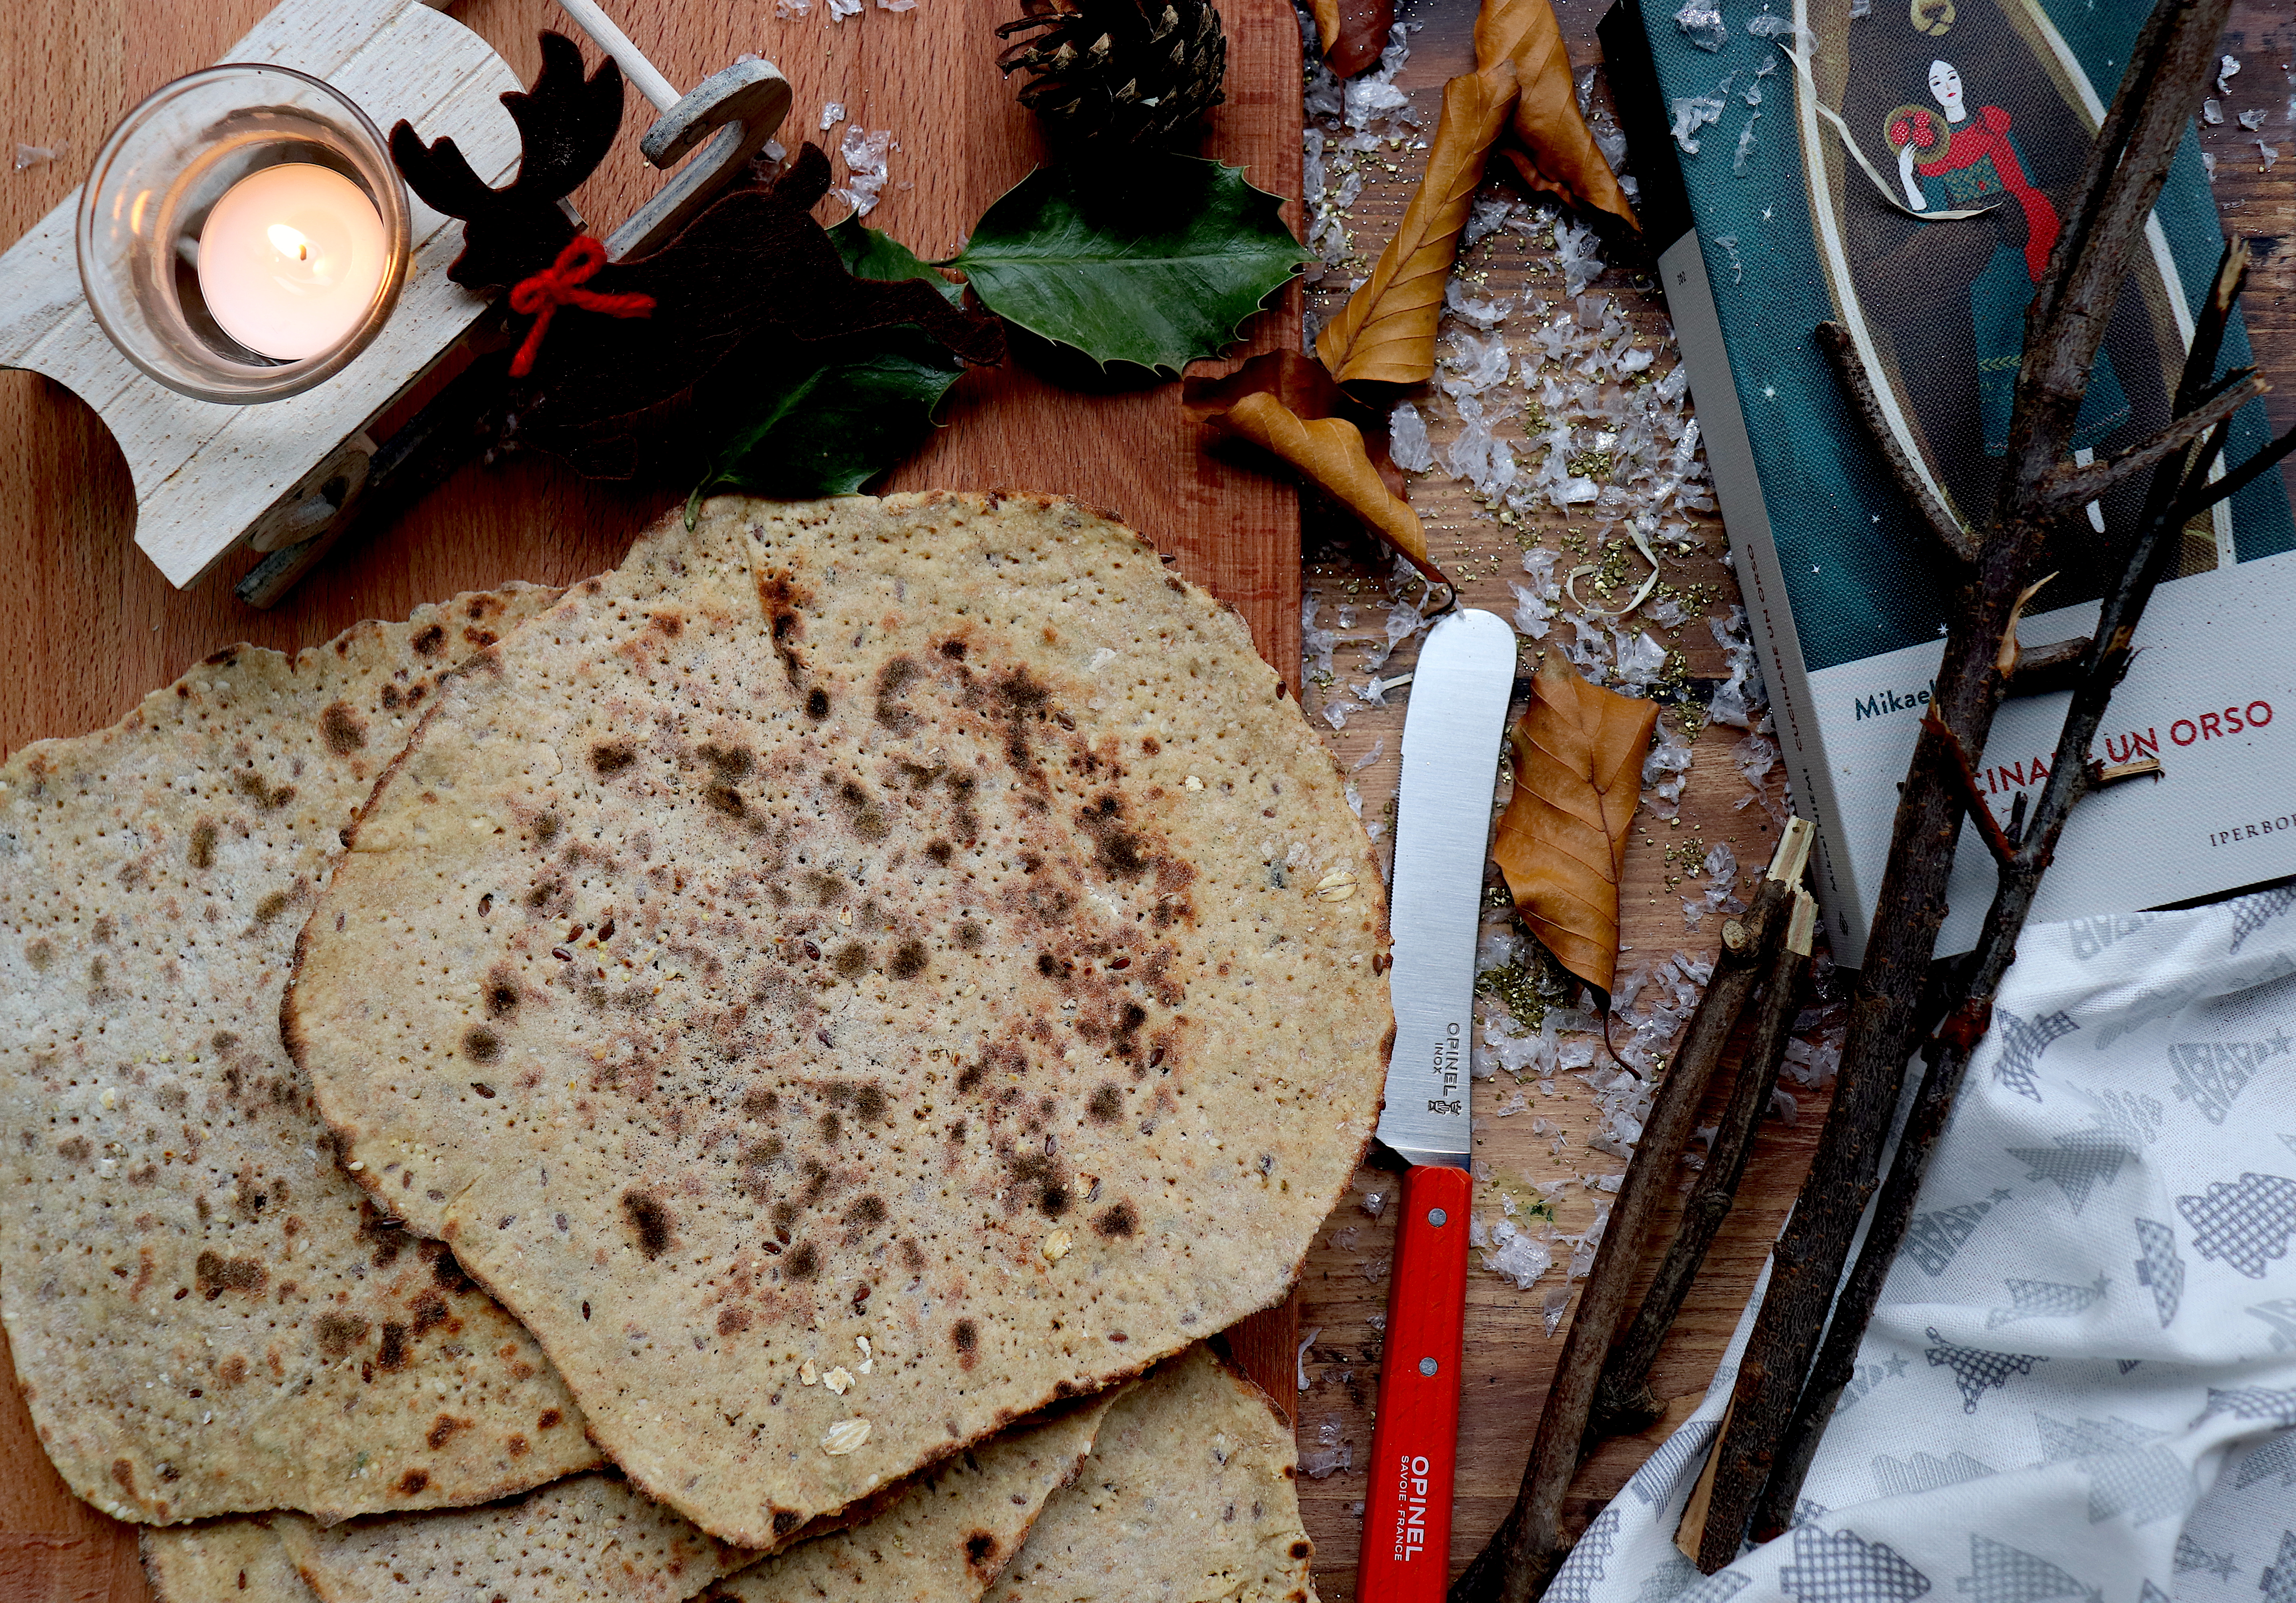 CUCINARE UN ORSO: il libro, i Sami e la ricetta del Polar Brød